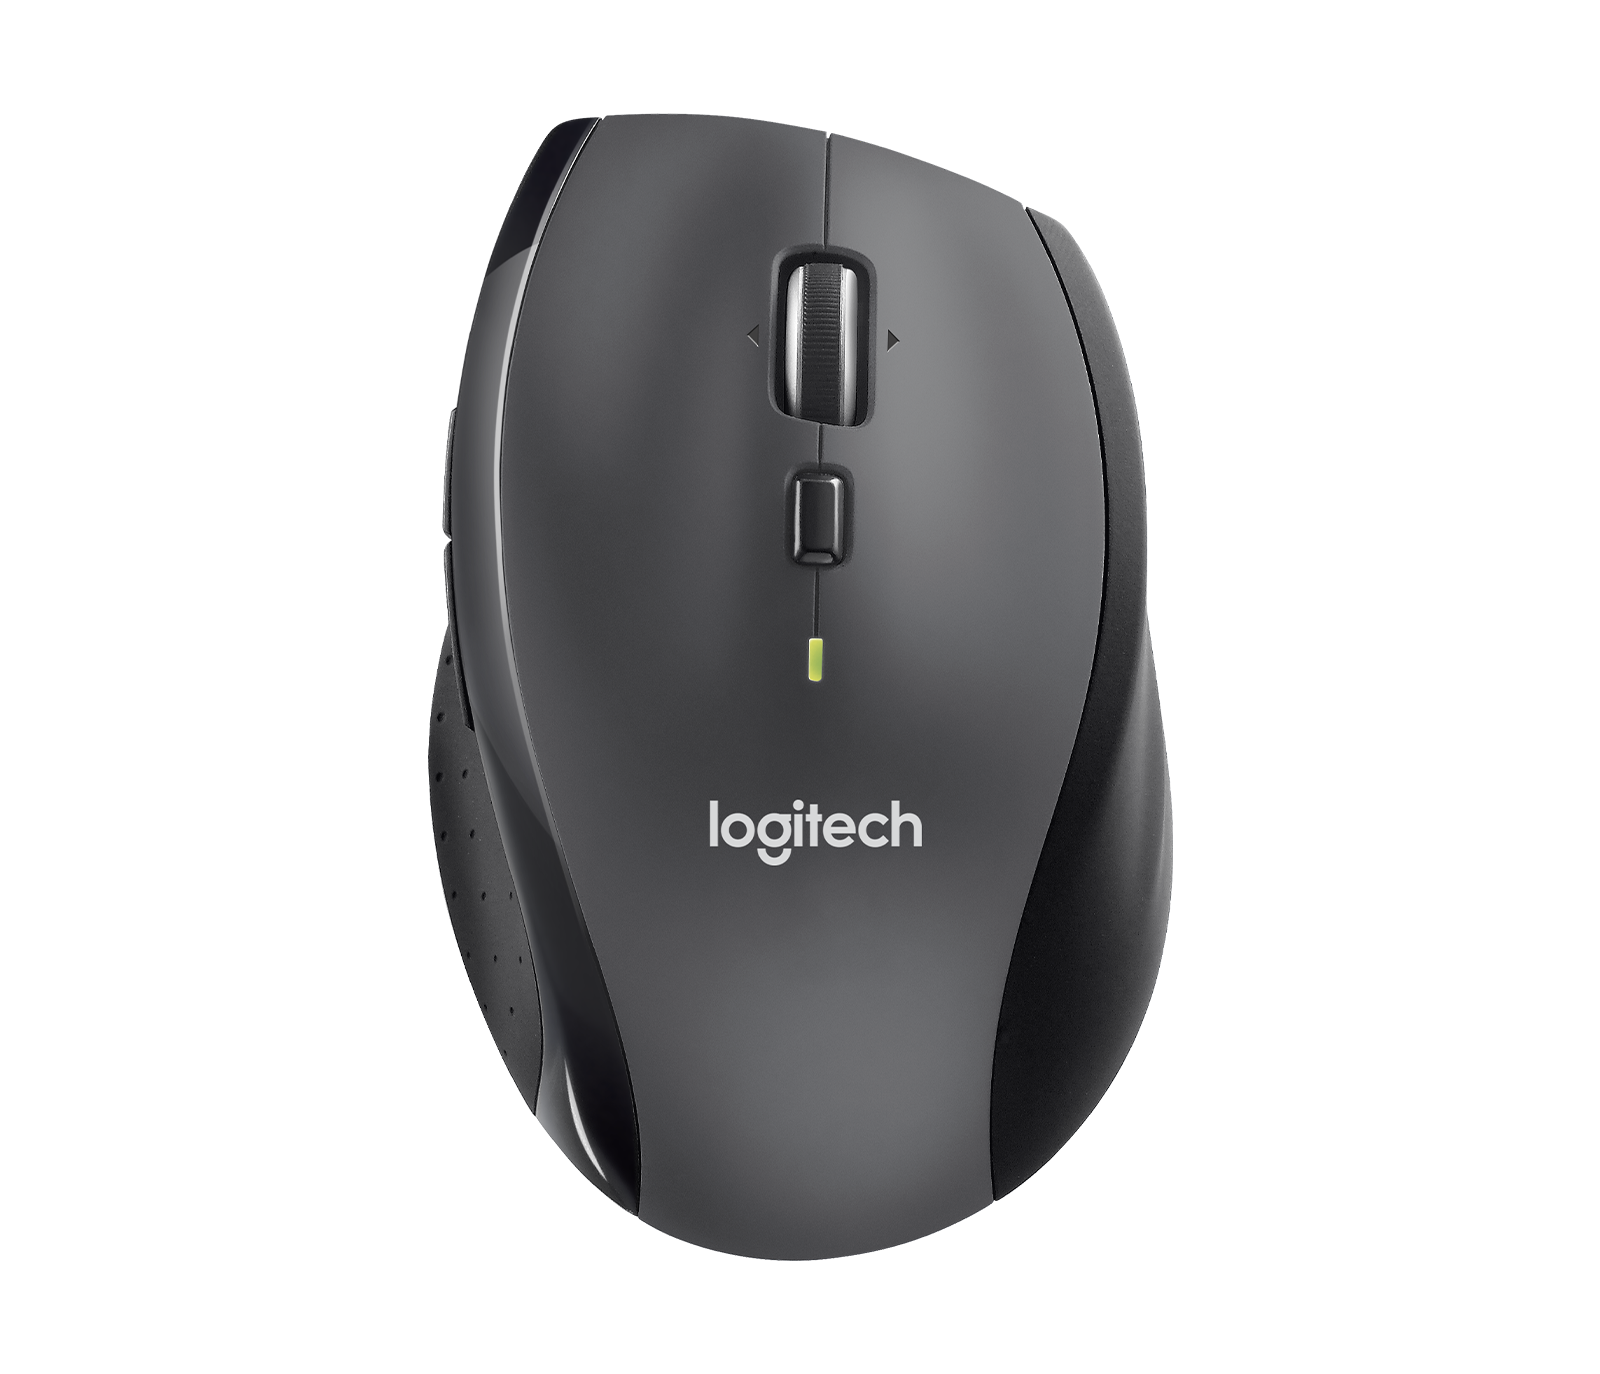 Folkeskole Om etikette Logitech M705 Marathon Wireless Mouse with 3Y Battery Life